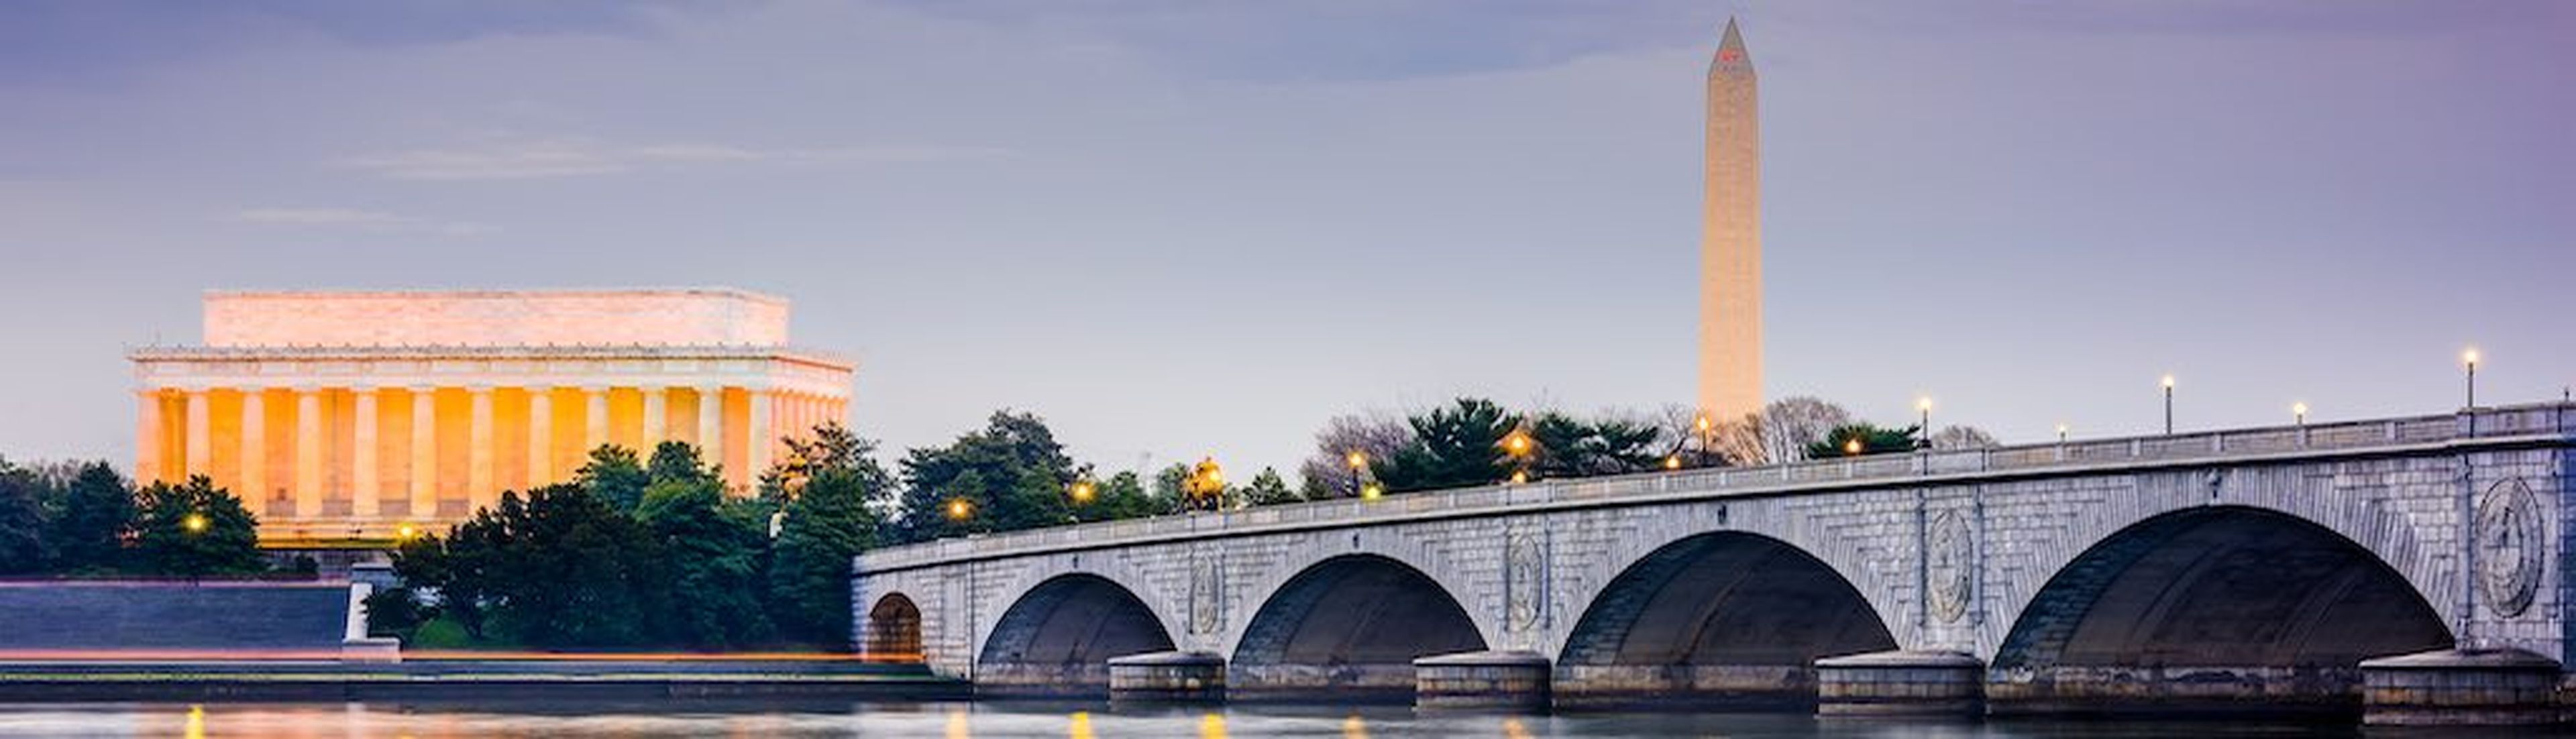 Washington DC, USA skyilne on the Potomac River with Lincoln Memorial, Washington Memorial, and Arlington Memorial Bridge. (Washington DC, USA skyilne on the Potomac River with Lincoln Memorial, Washington Memorial, and Arlington Memorial Bridge., ASC